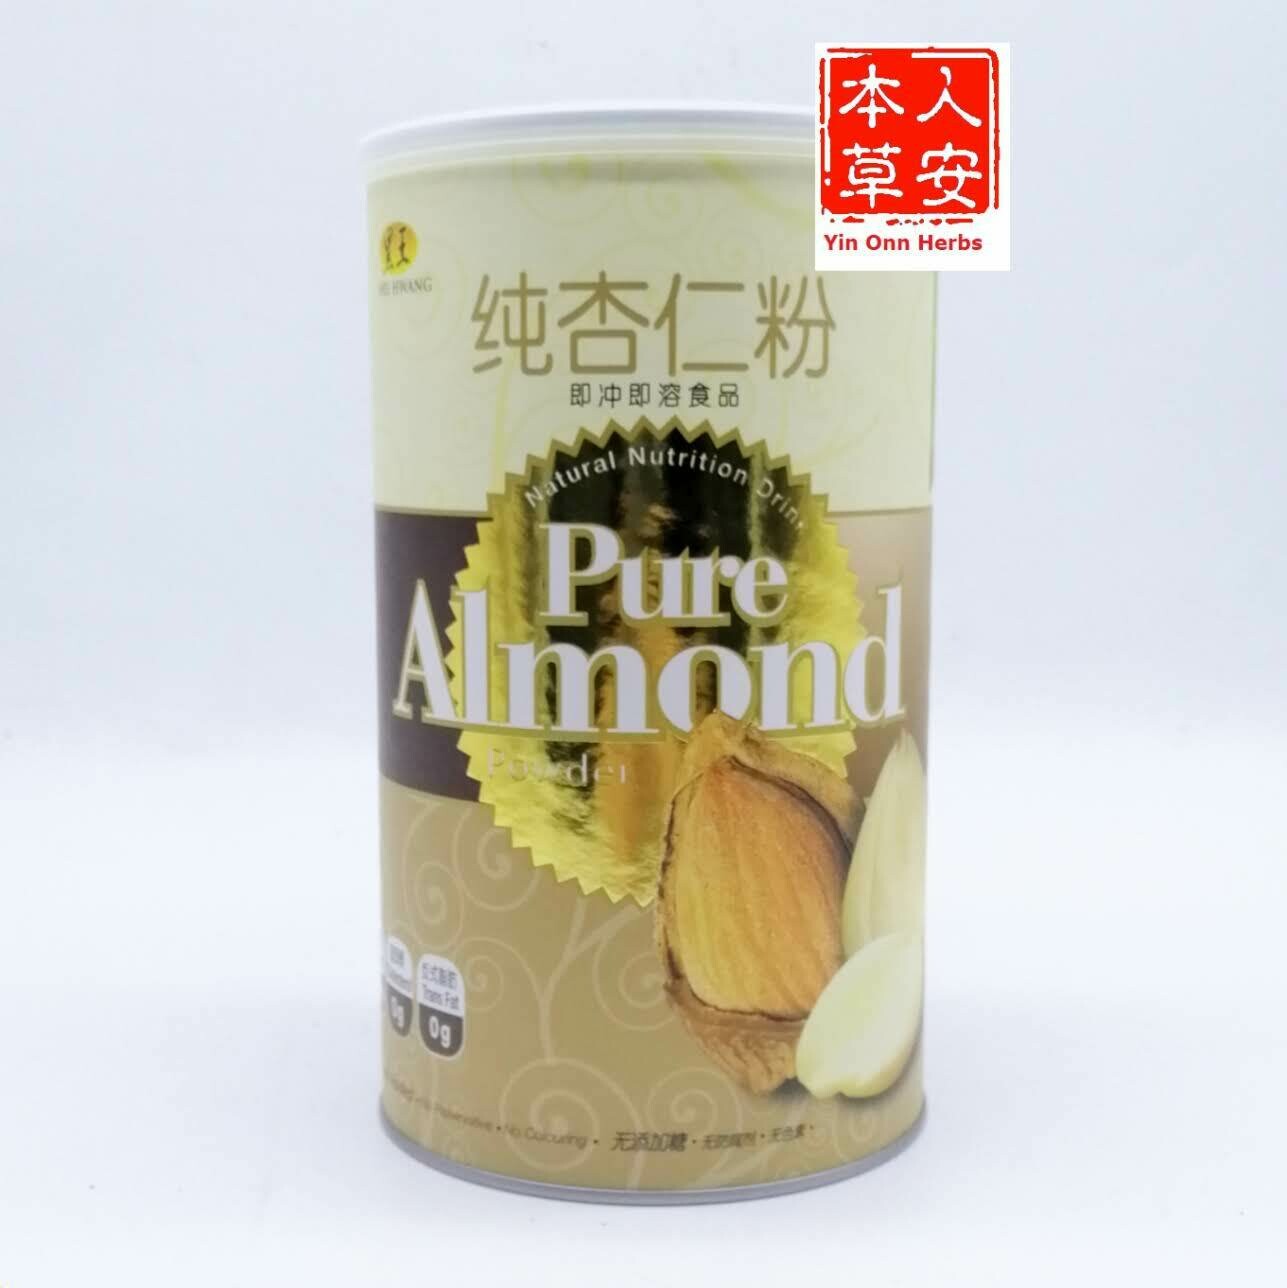 黑王纯杏仁粉 500gm Hei Hwang Pure Almond Powder